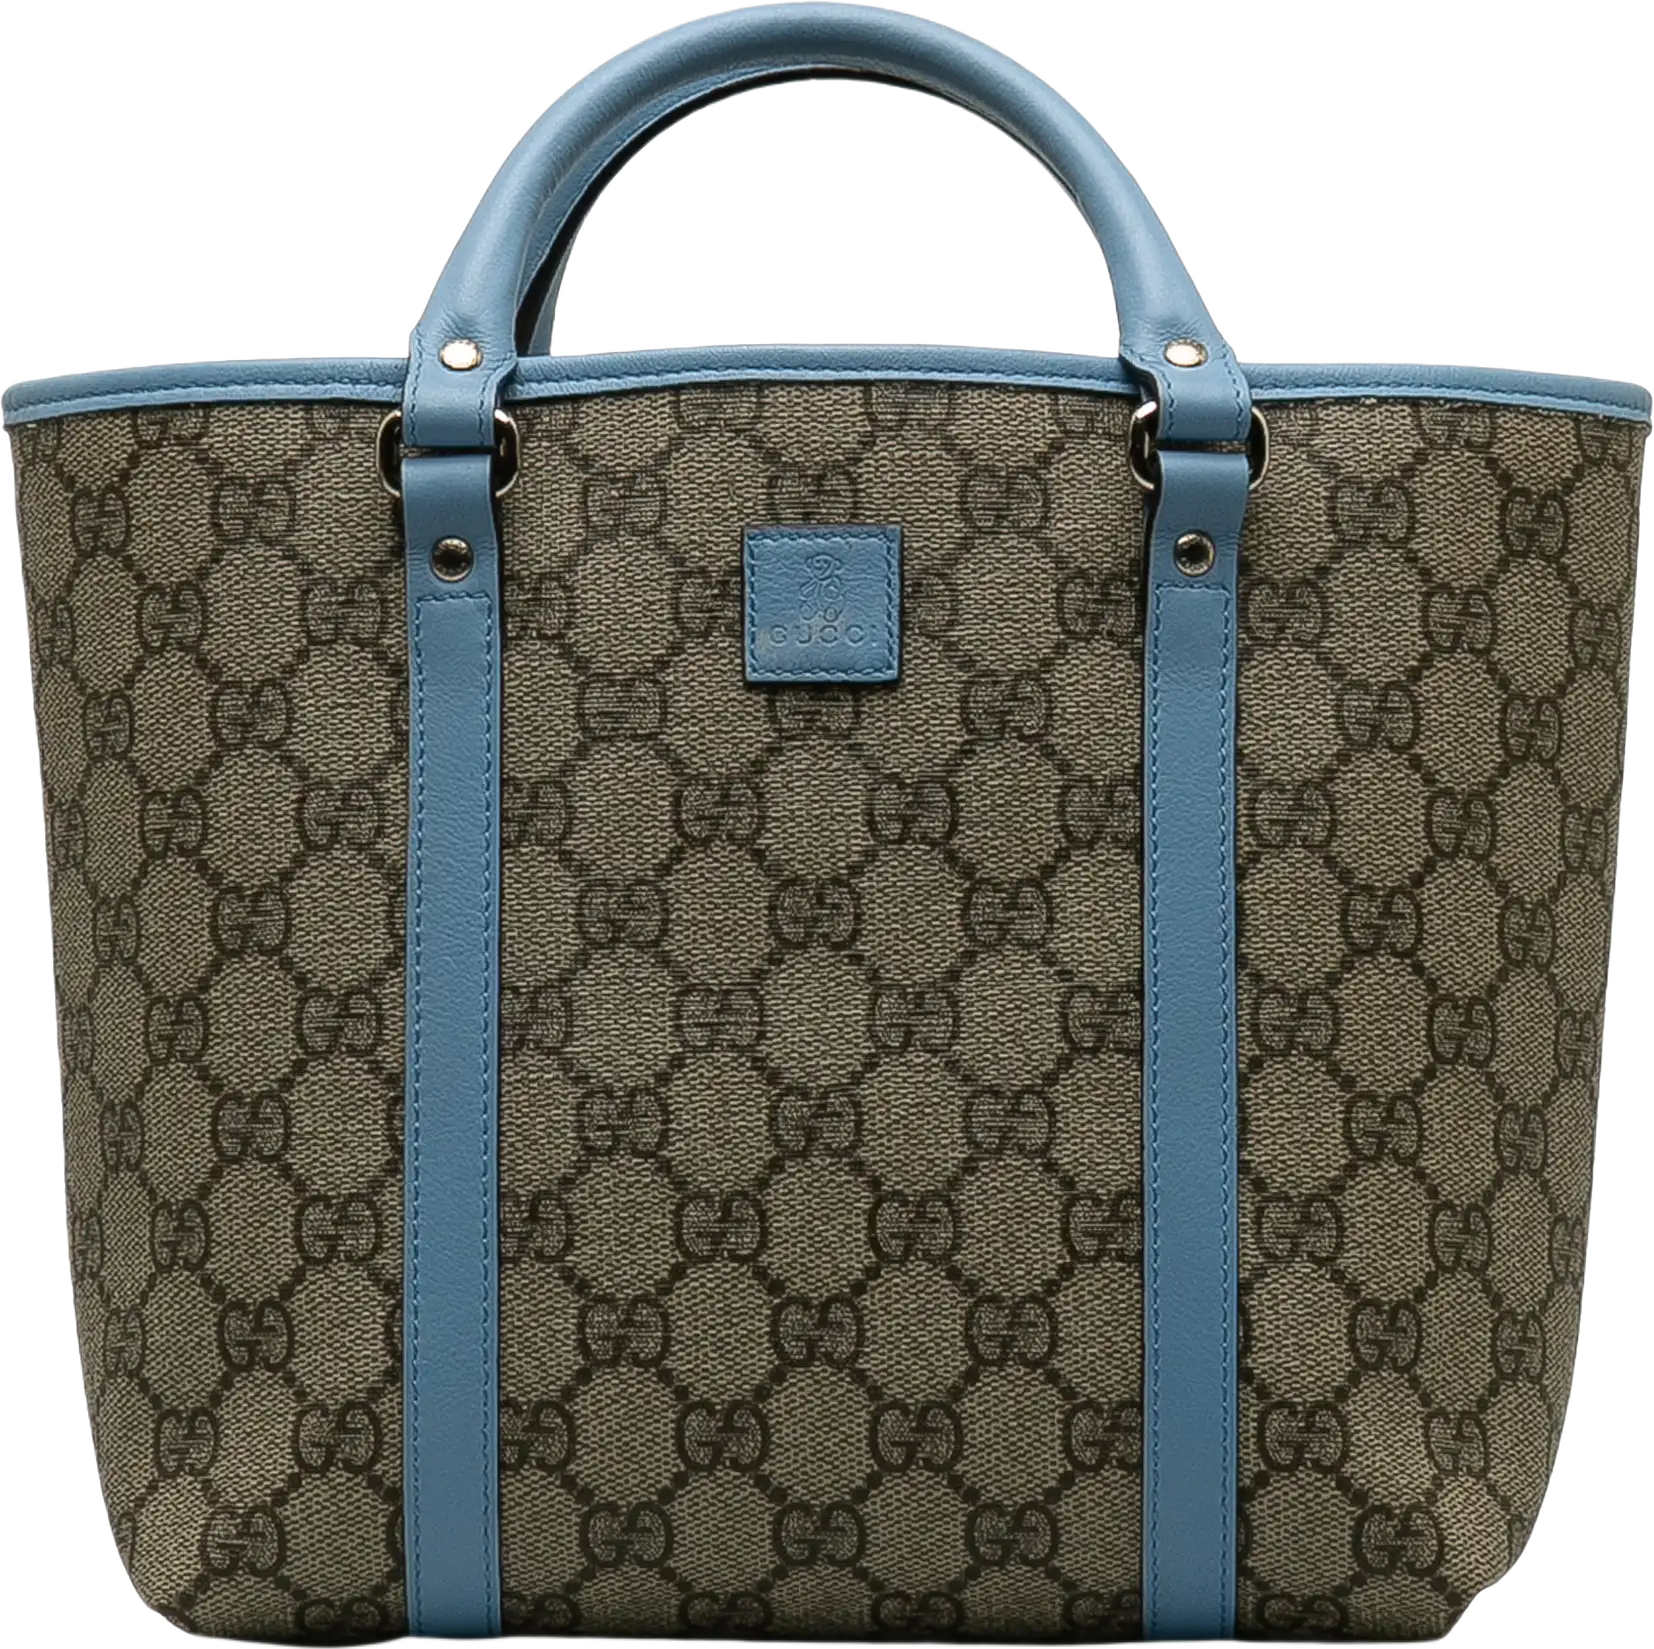 Gucci Gg Supreme Handbag